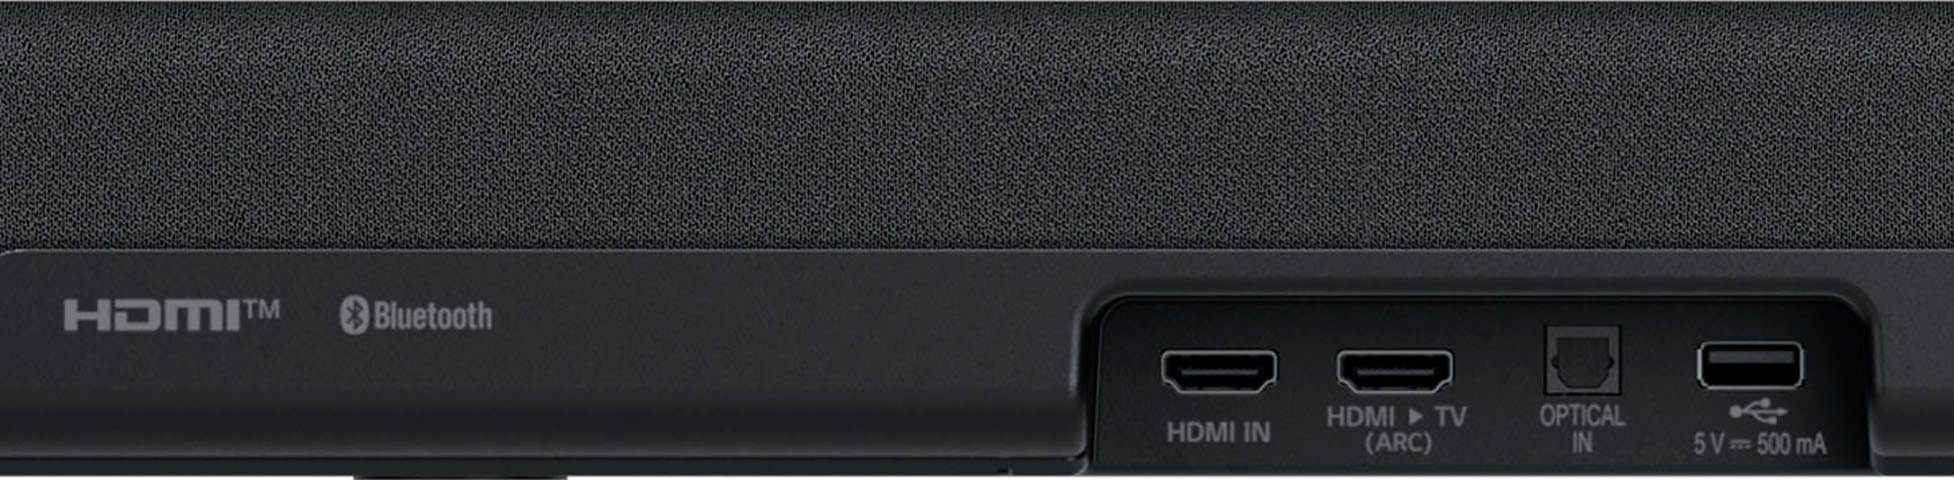 LG DS40Q 2.1 Soundbar (Bluetooth, Subwoofer) W, Share,kabelloser Sound AI Soundmode Res Audio,TV Pro,Hi 300